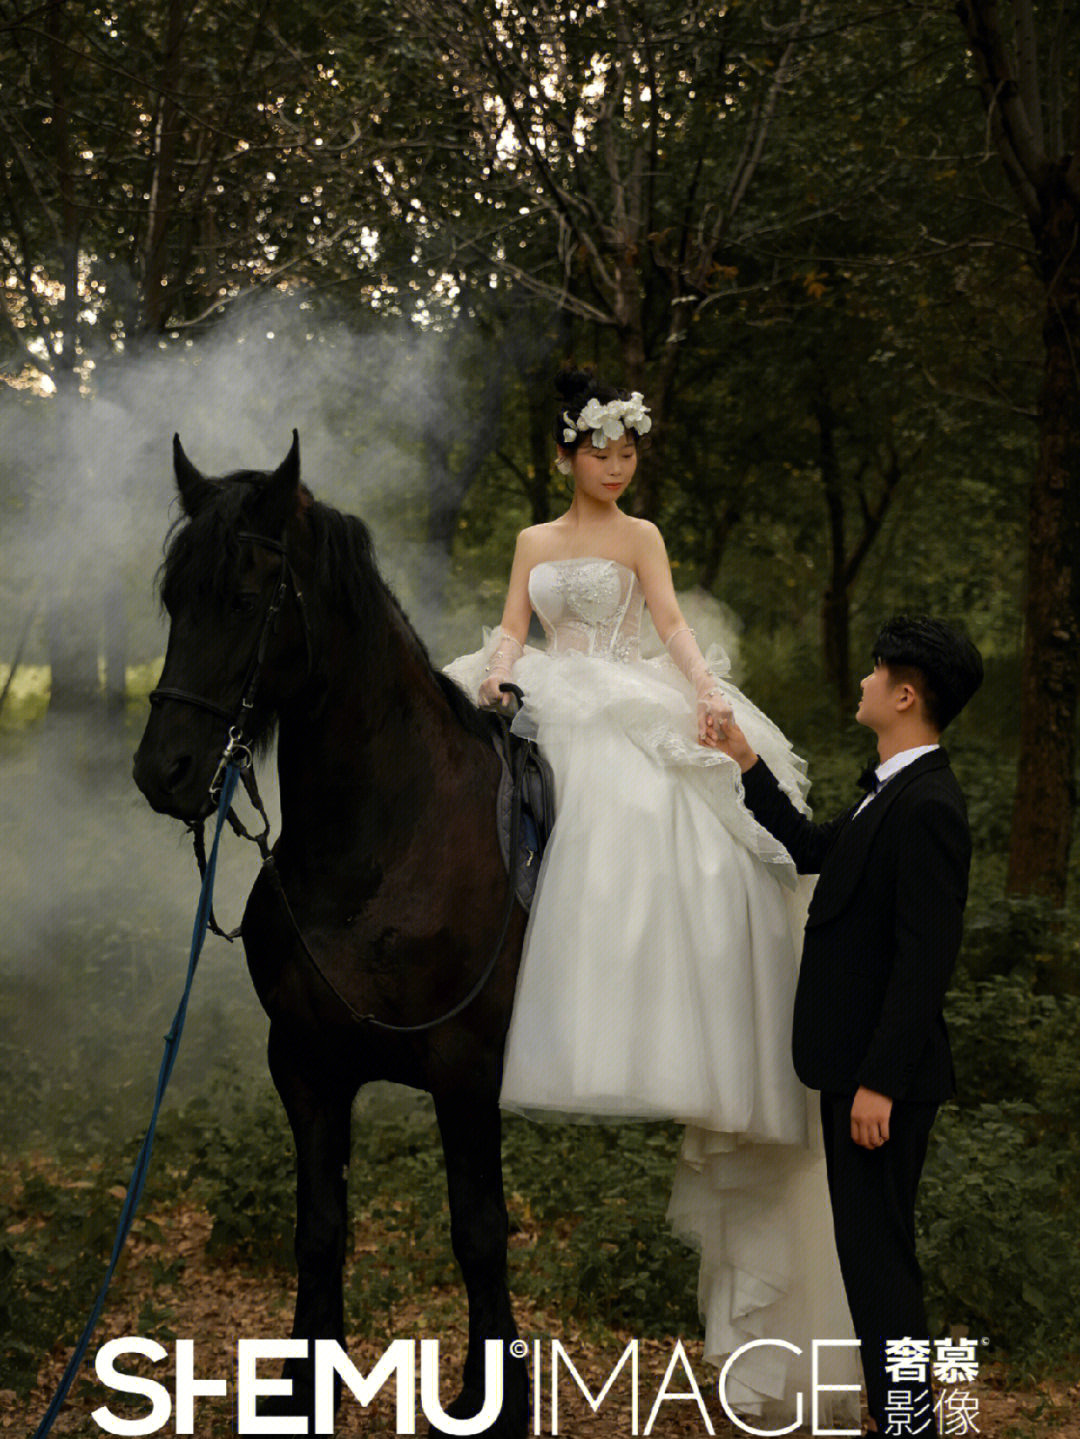 终于拍到了私藏很久的骑马婚纱照啦济南